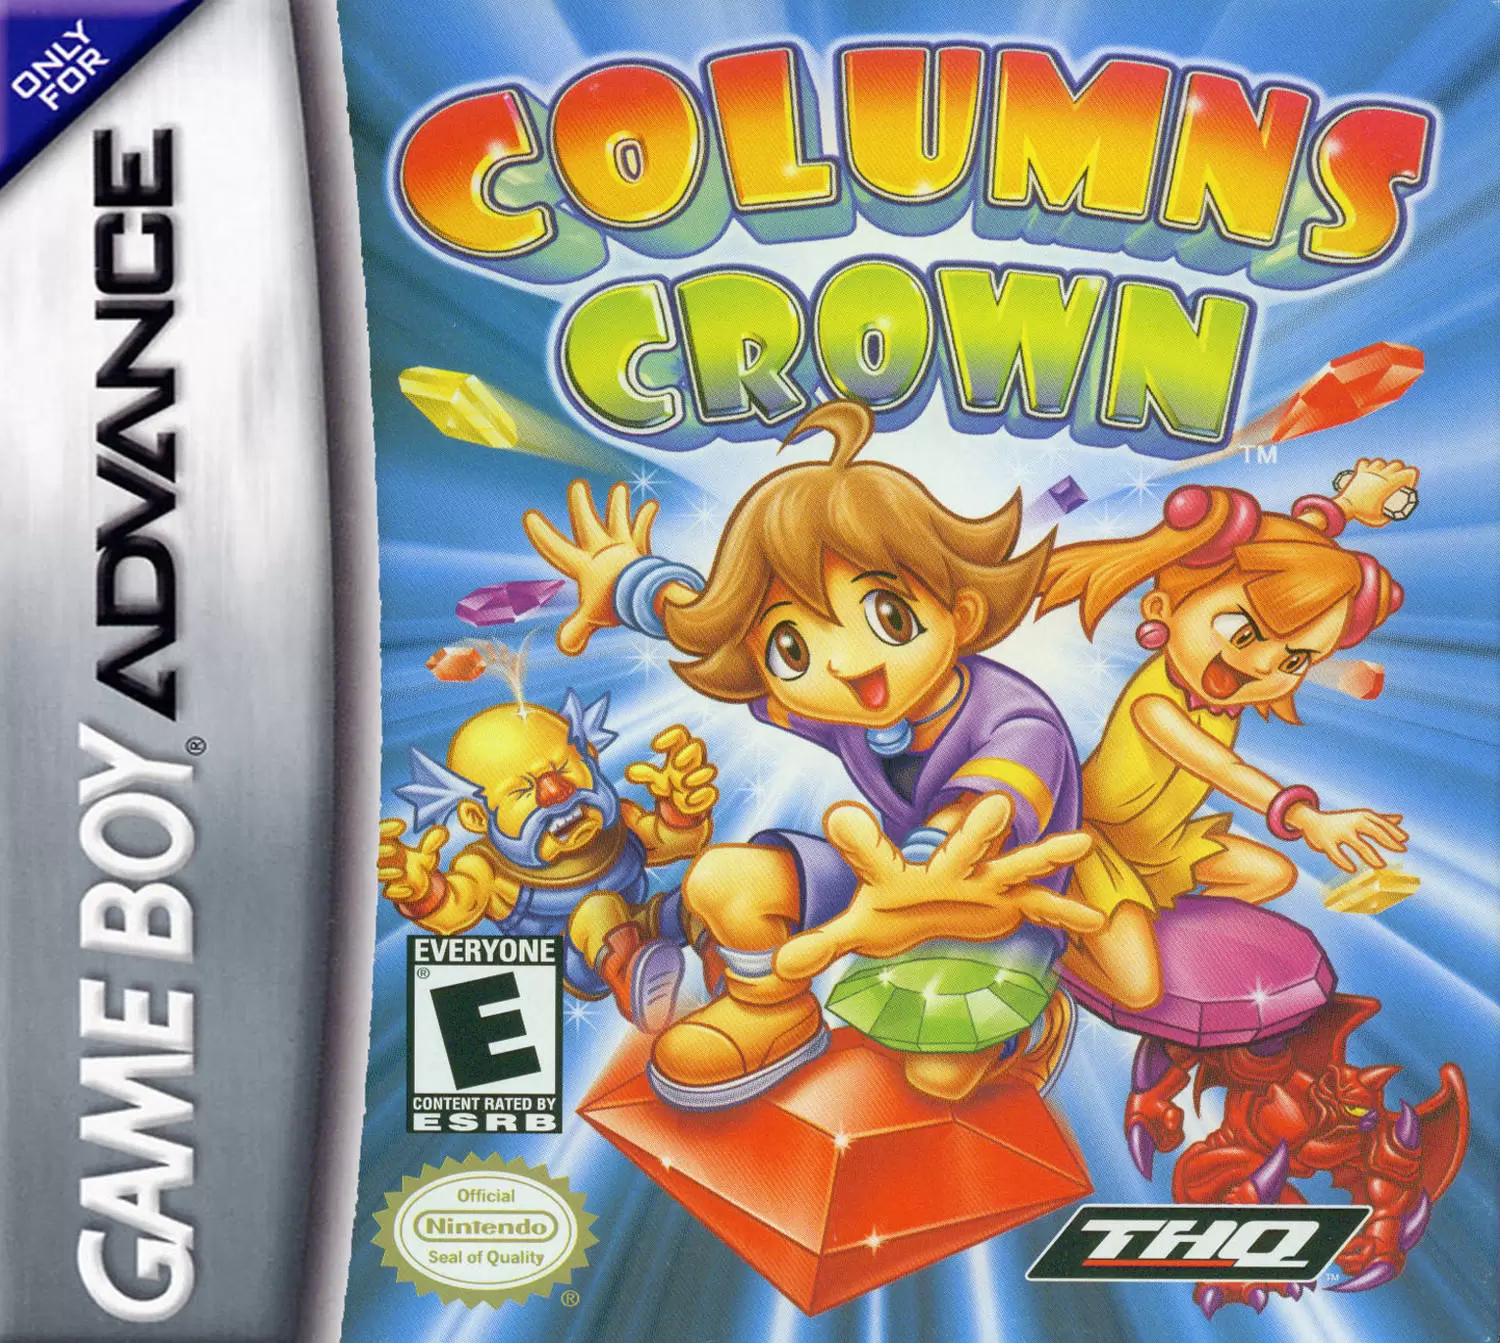 Game Boy Advance Games - Columns Crown